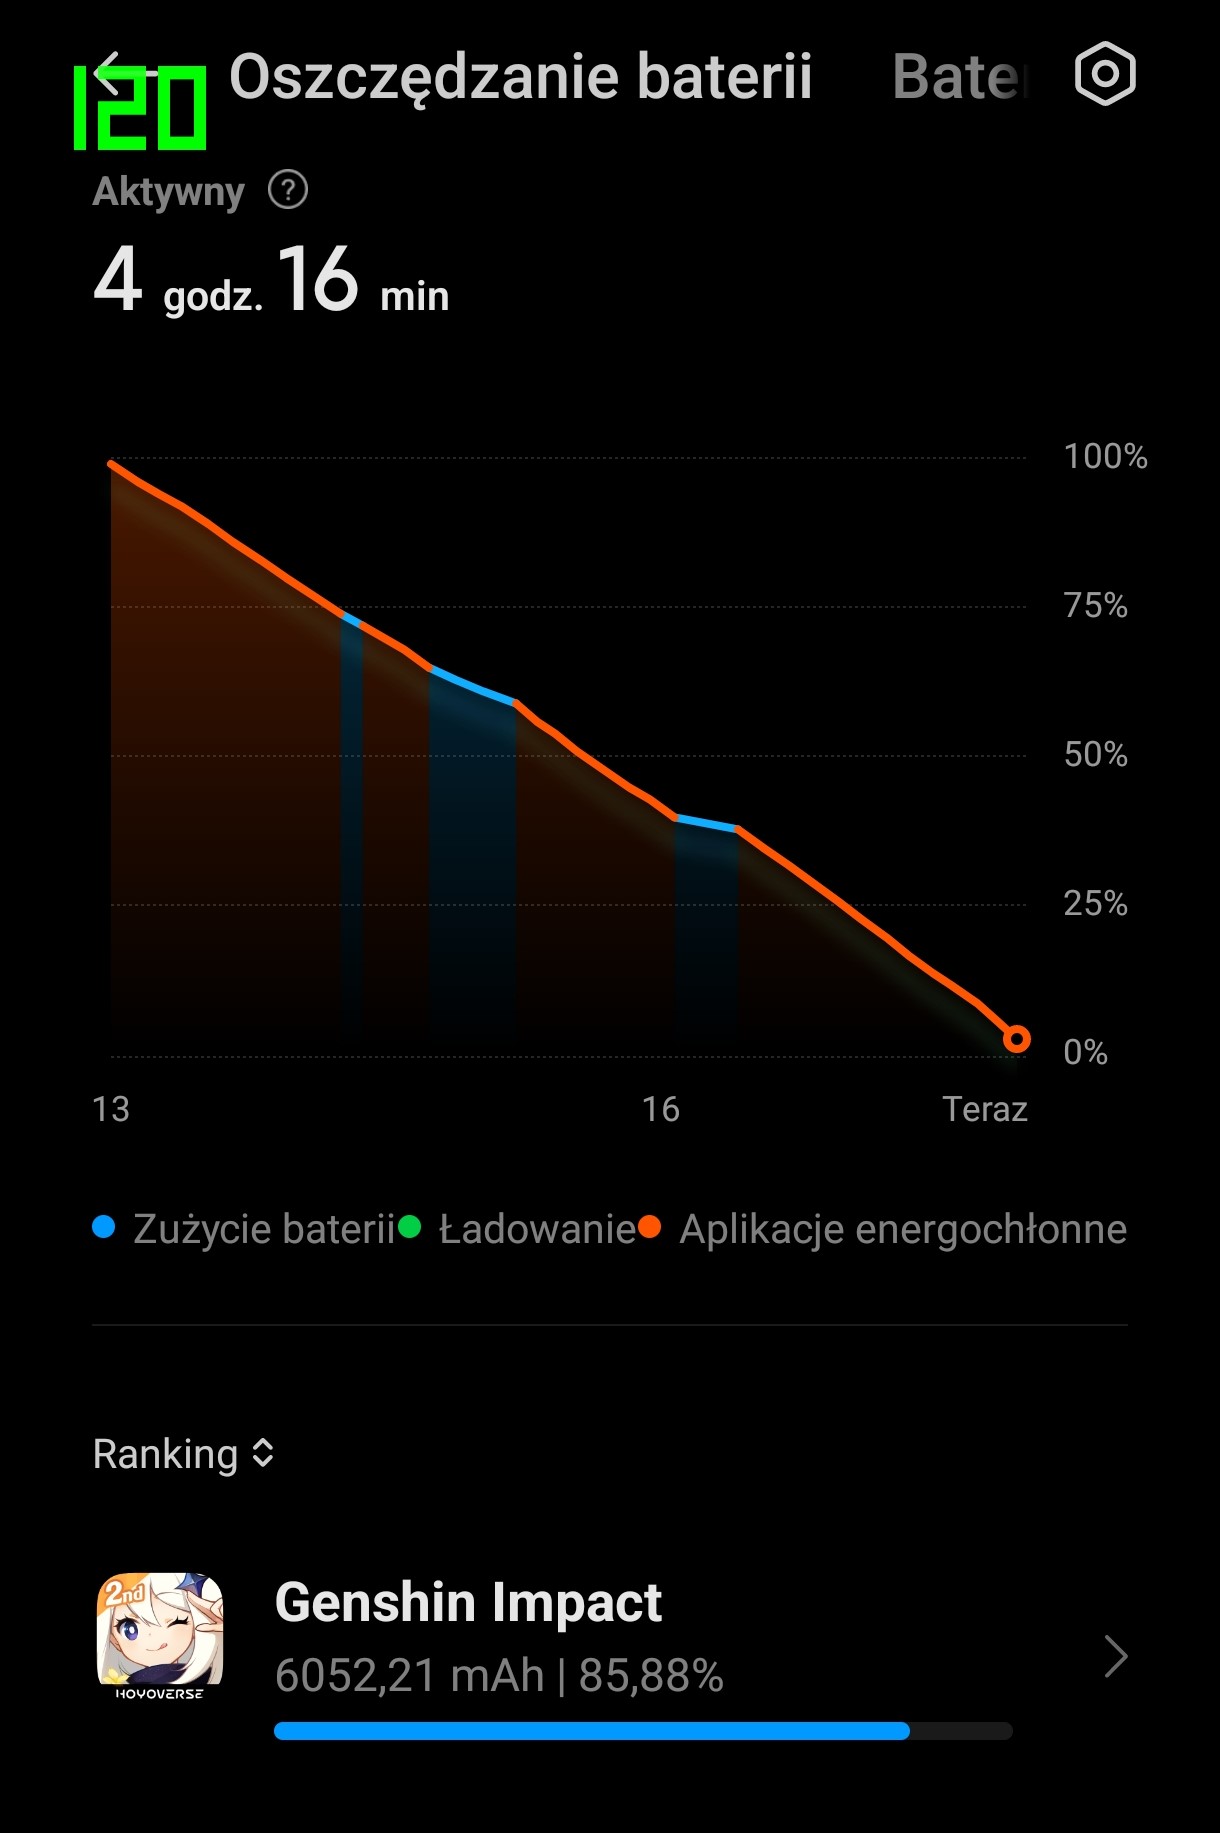 Zrzut ekranu z wykresu przedstawiającego zużycie baterii